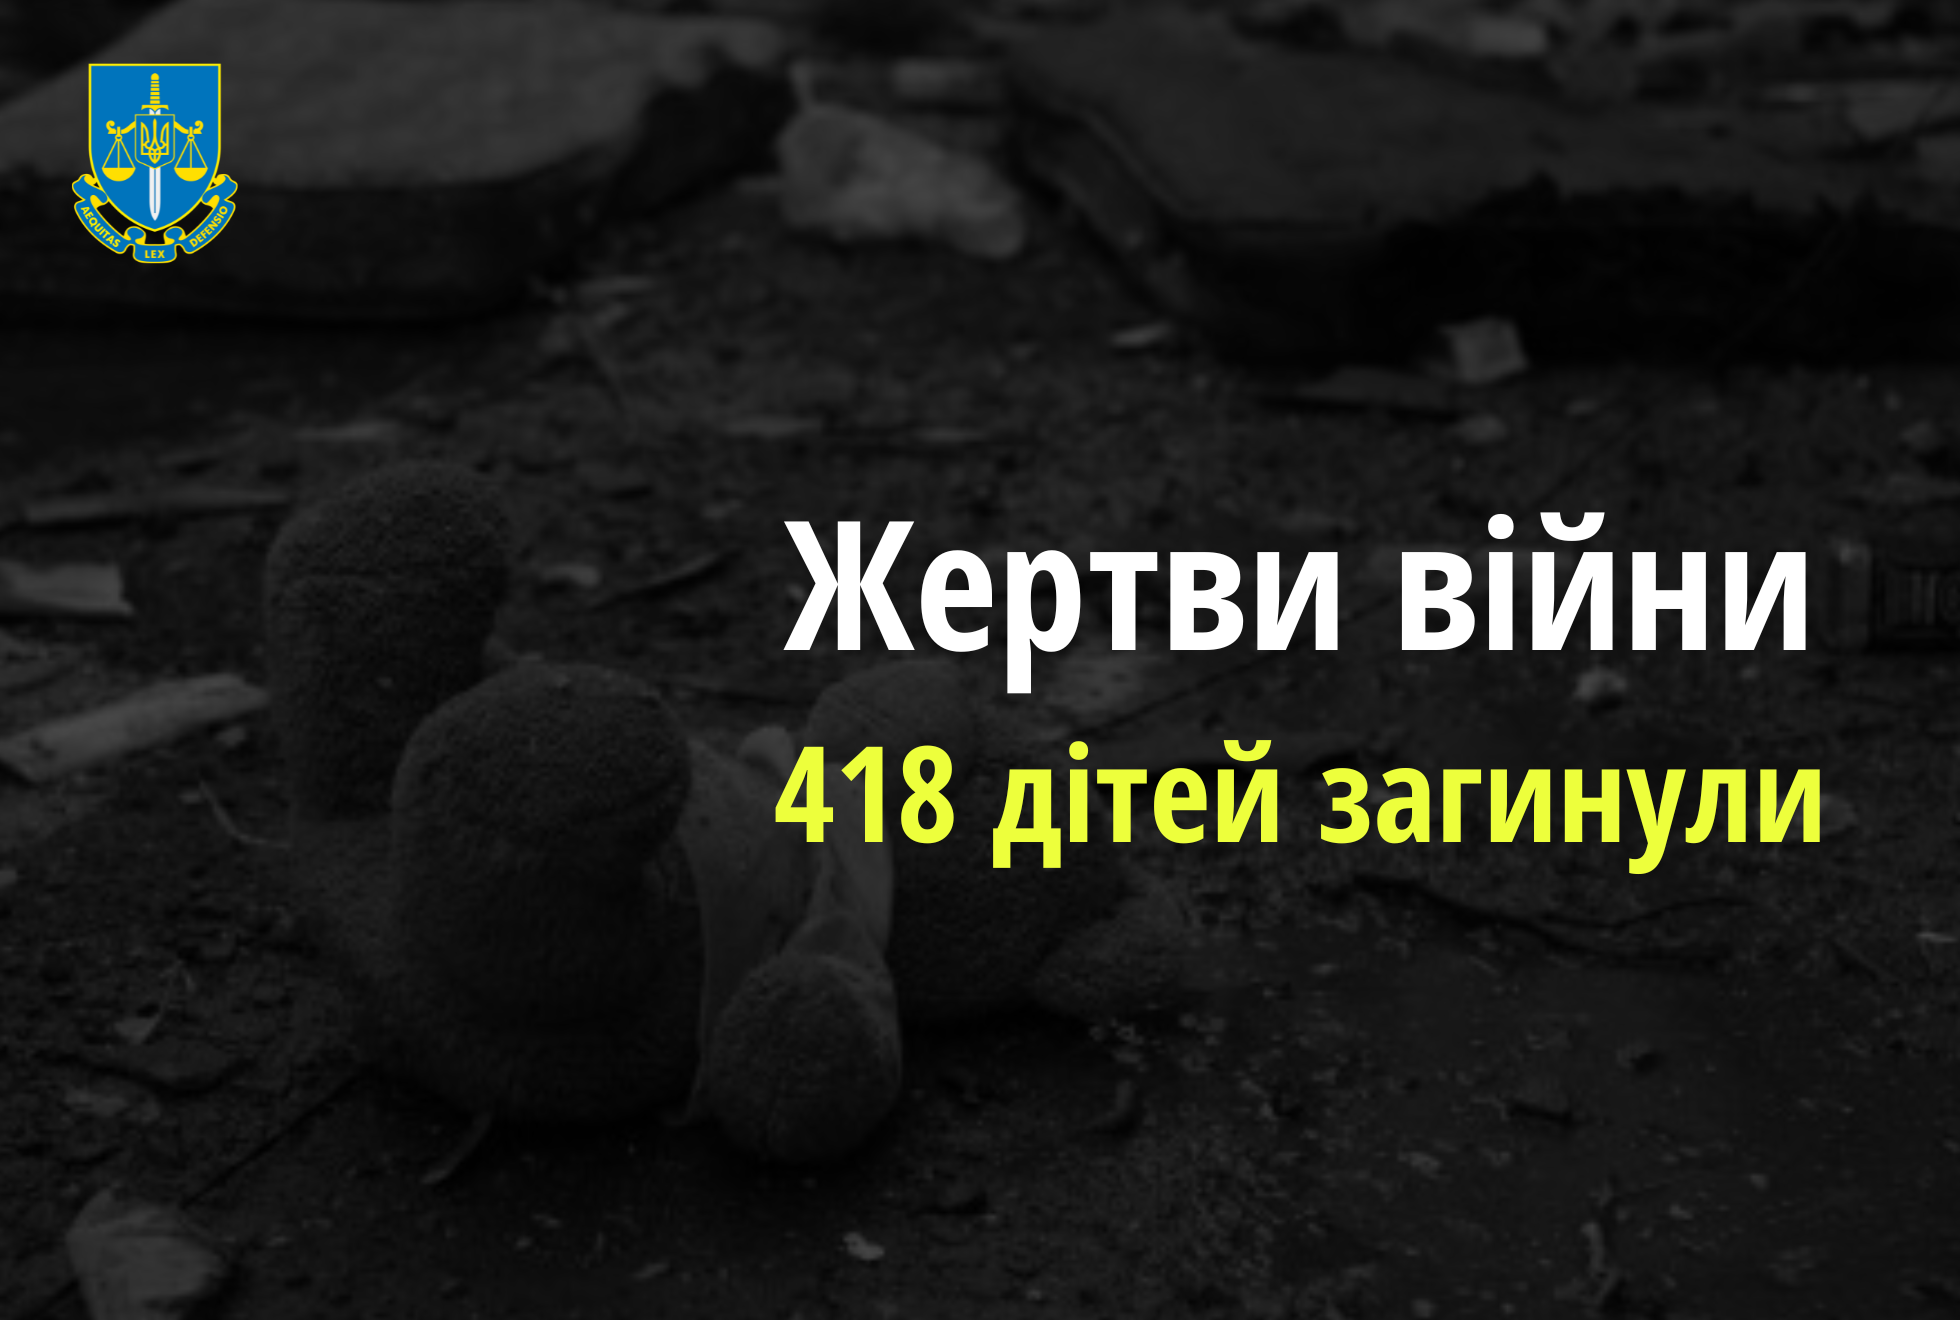 Ювенальні прокурори: 418 дітей загинуло внаслідок збройної агресії РФ в Україні